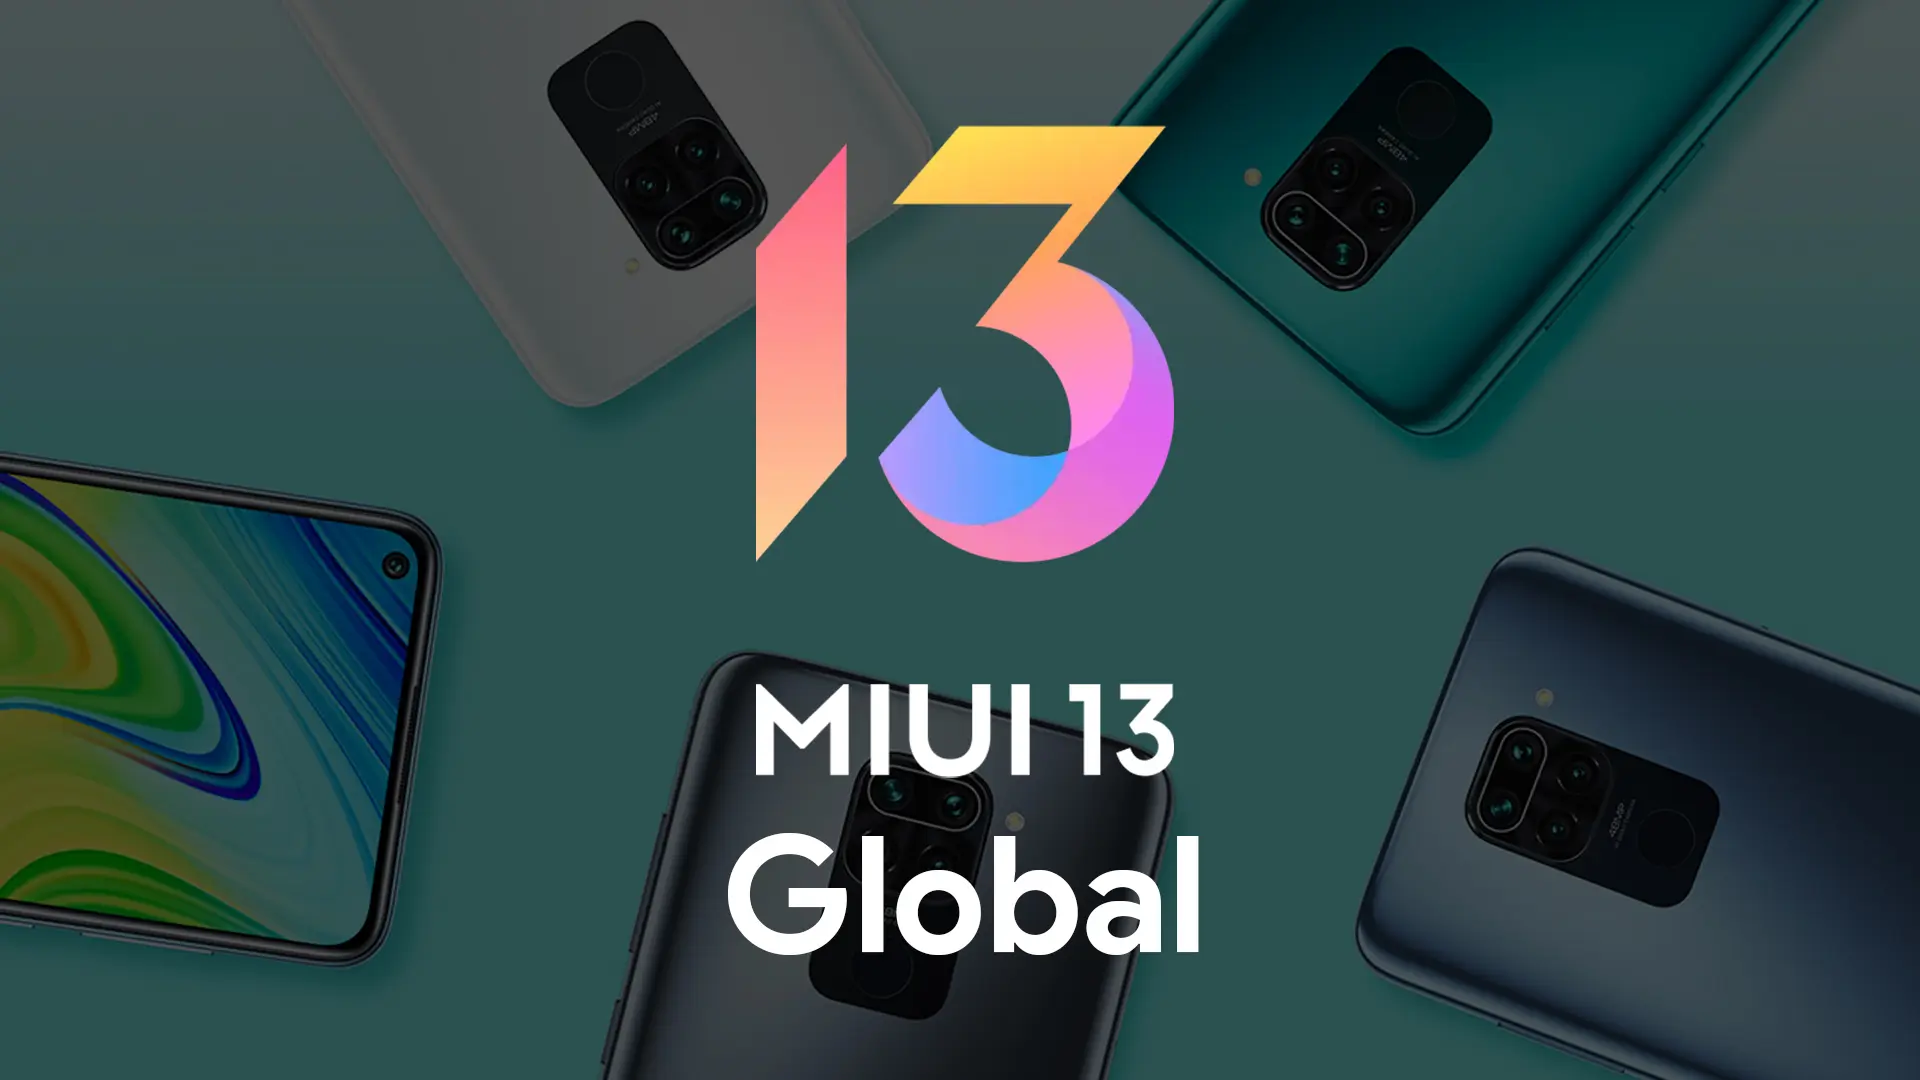 Tres teléfonos inteligentes Xiaomi más económicos recibieron el firmware global MIUI 13 en Android 12